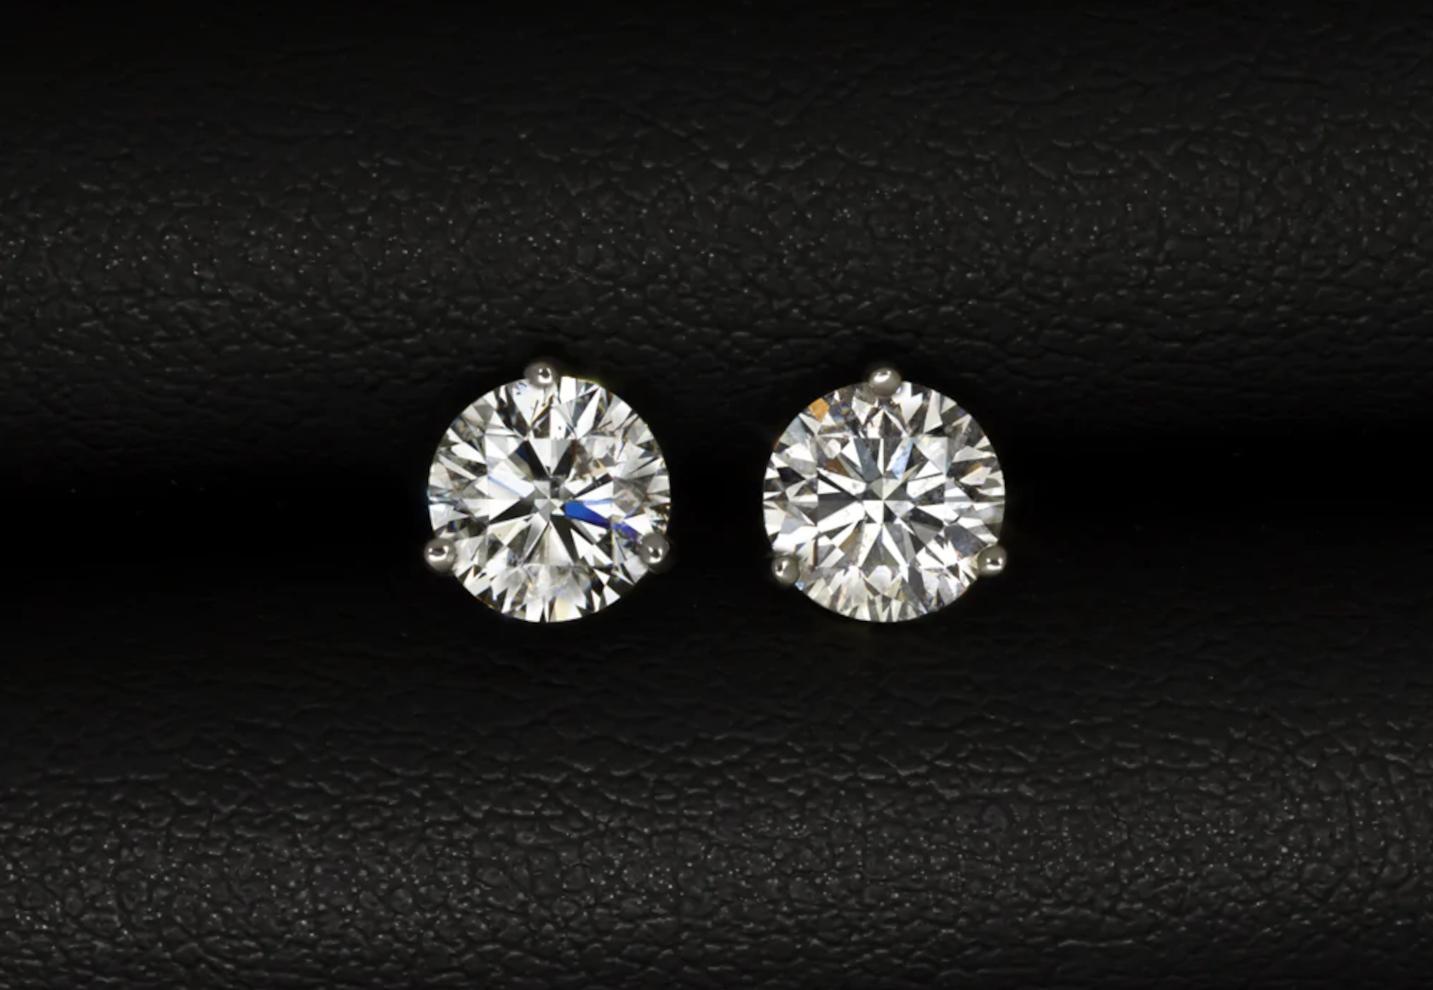 Dieses Paar Ohrstecker mit 1,90 Karat Diamanten im Brillantschliff ist sehr gut geschliffen und hat eine auffallend brillante weiße Farbe.
 
Es handelt sich um 100 % natürliche Diamanten, die in keiner Weise behandelt oder veredelt wurden.
Sie sind